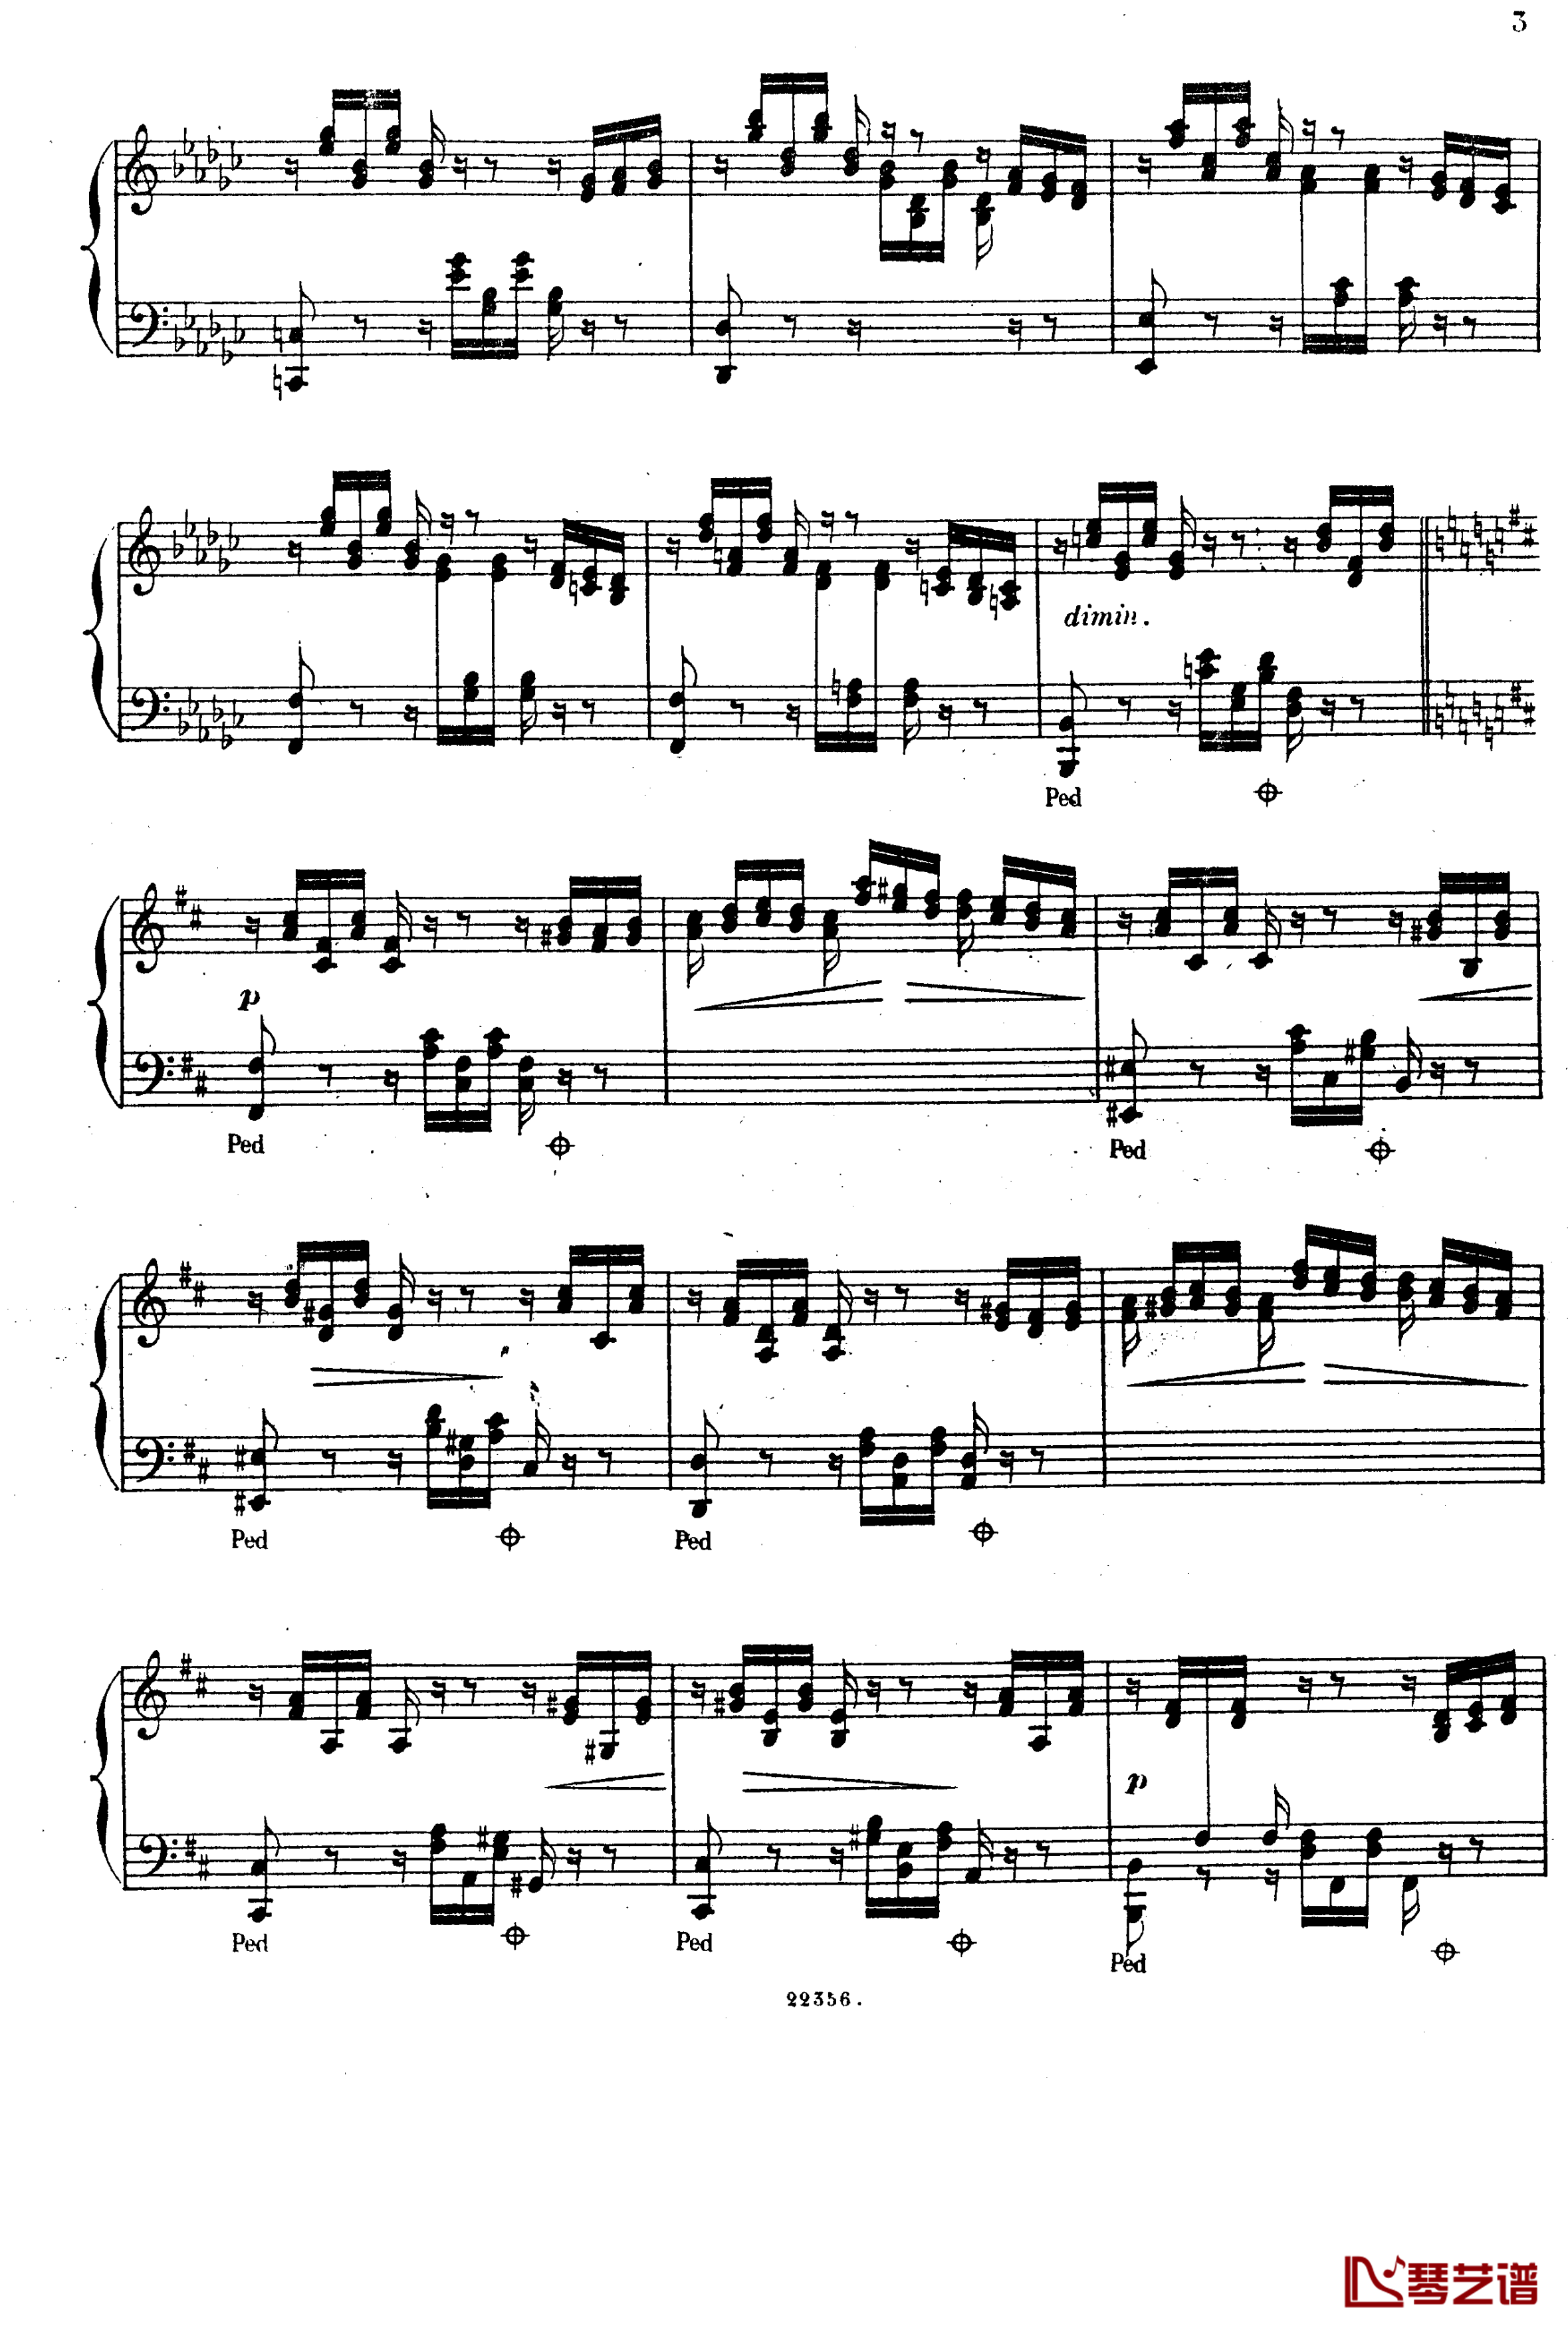  前奏曲与赋格 Op.6钢琴谱-斯甘巴蒂2